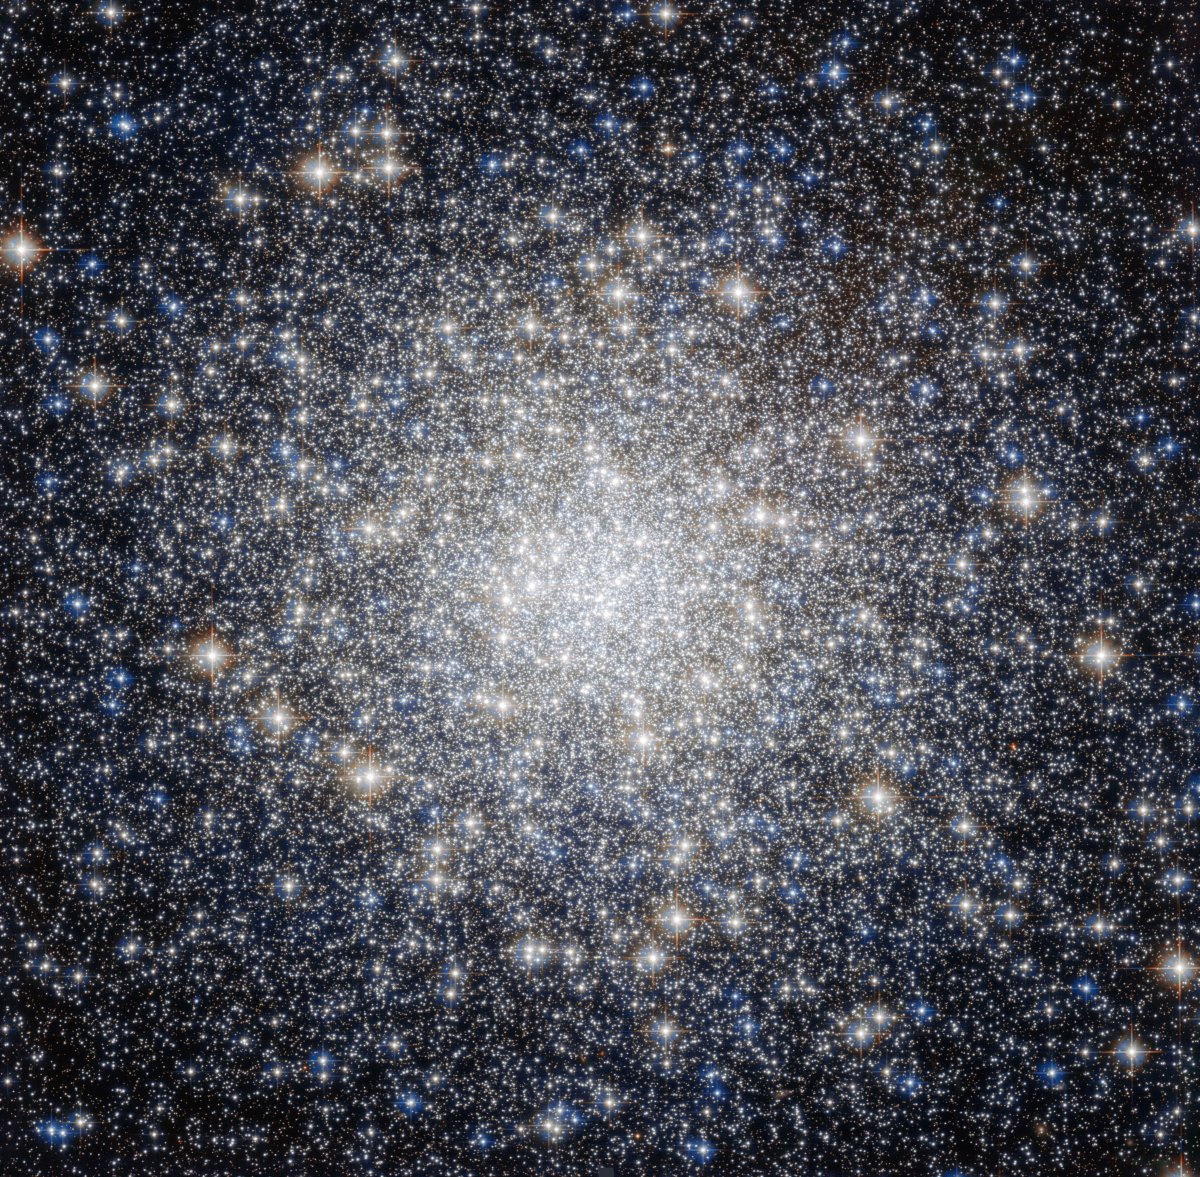 Globular star cluster pictures